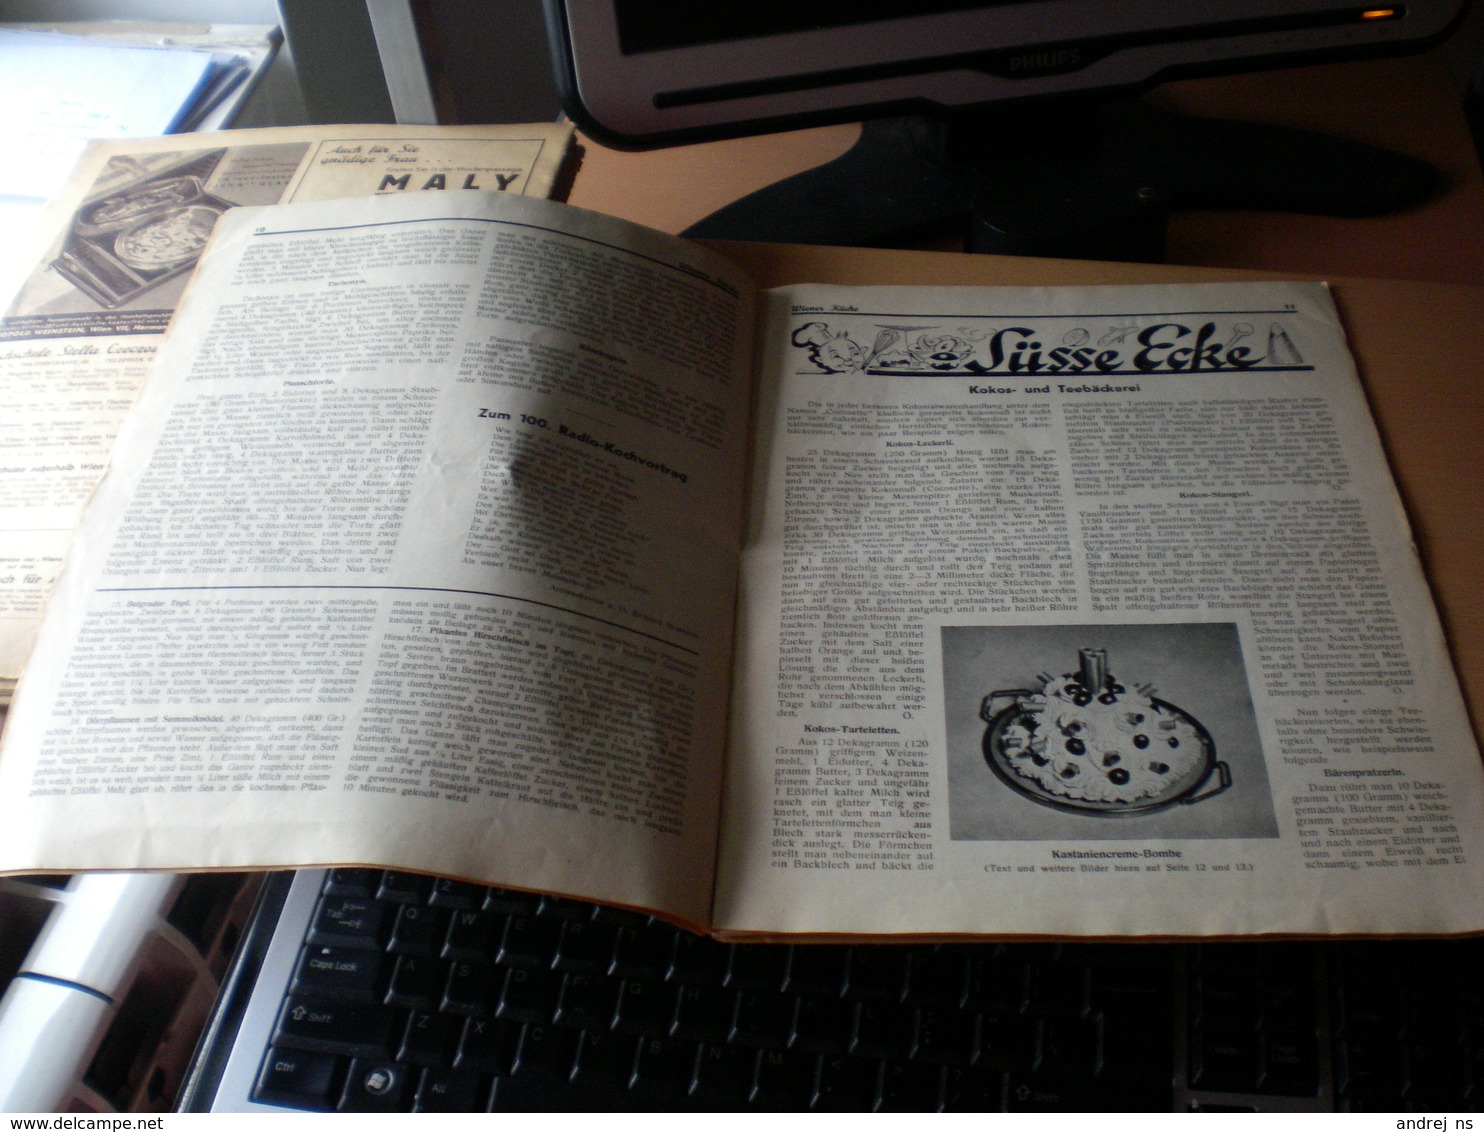 Wiener Kuche Herausgegeben Von Kuchenchef Franz Ruhm Nr 63 Wien 1936 24 Pages - Food & Drinks